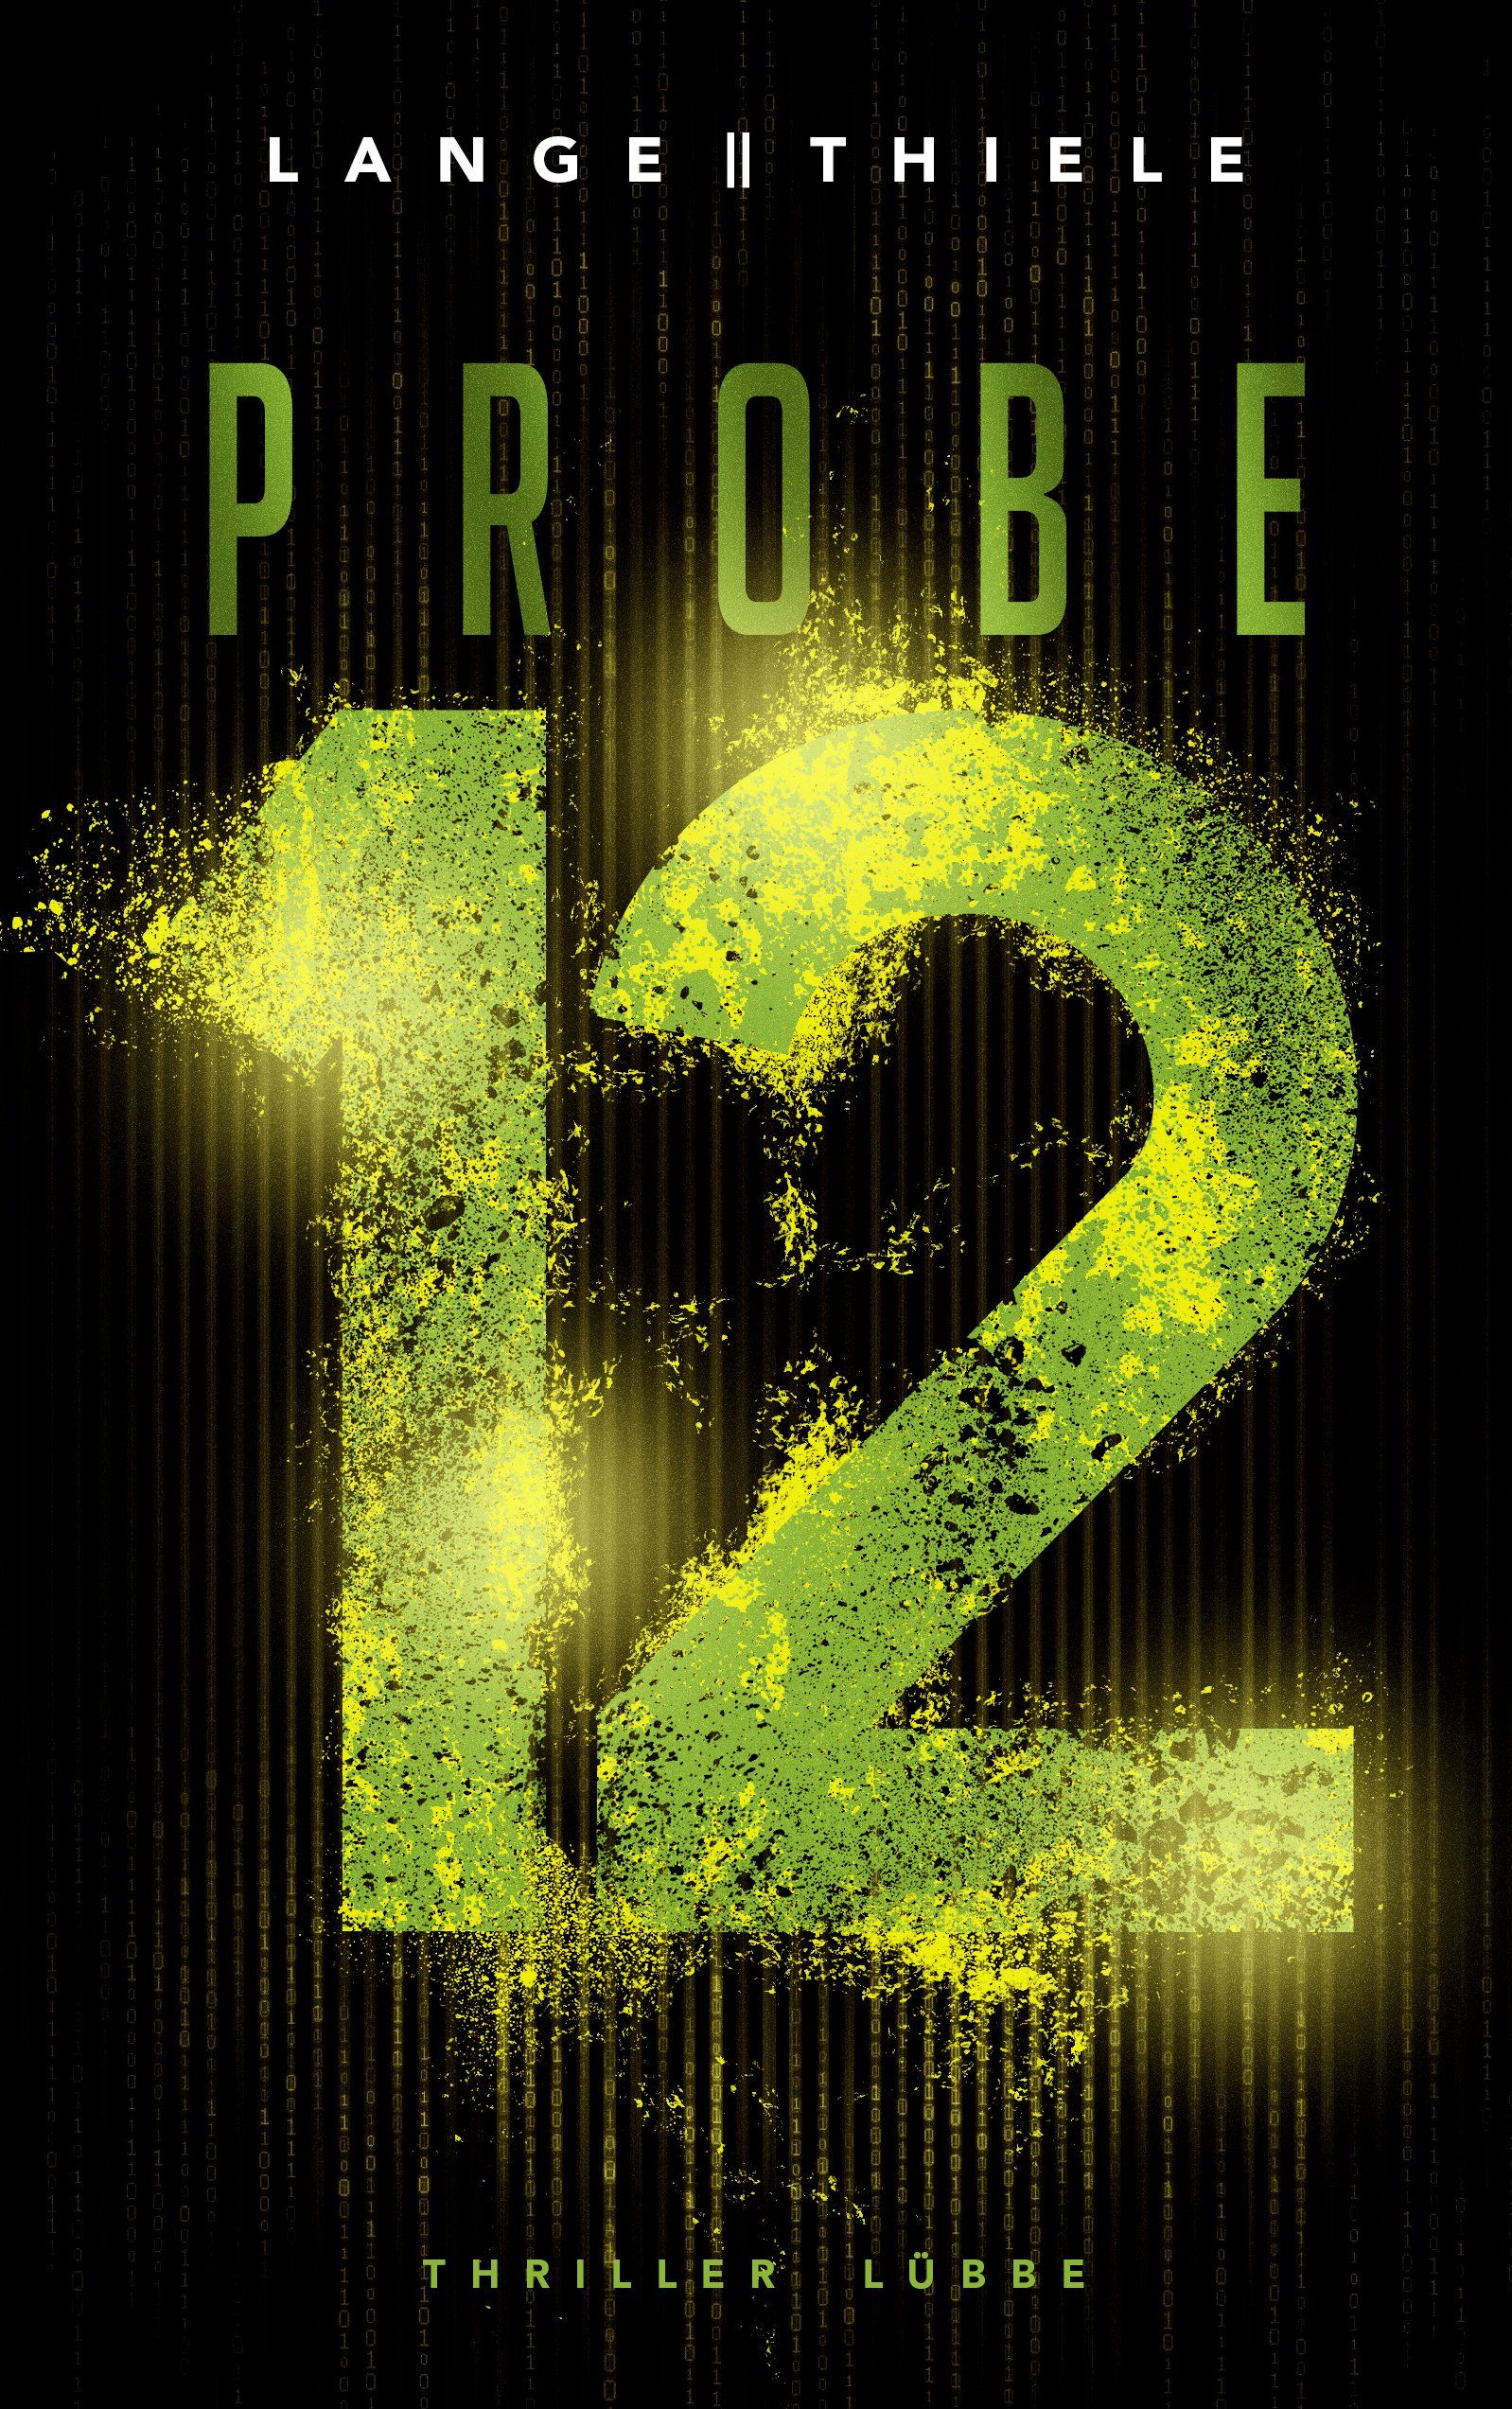 Cover: Probe 12, coverfüllende gelbgrüne 12 auf schwarzem Hintergrund, darüber steht in gleicher Farbe Probe